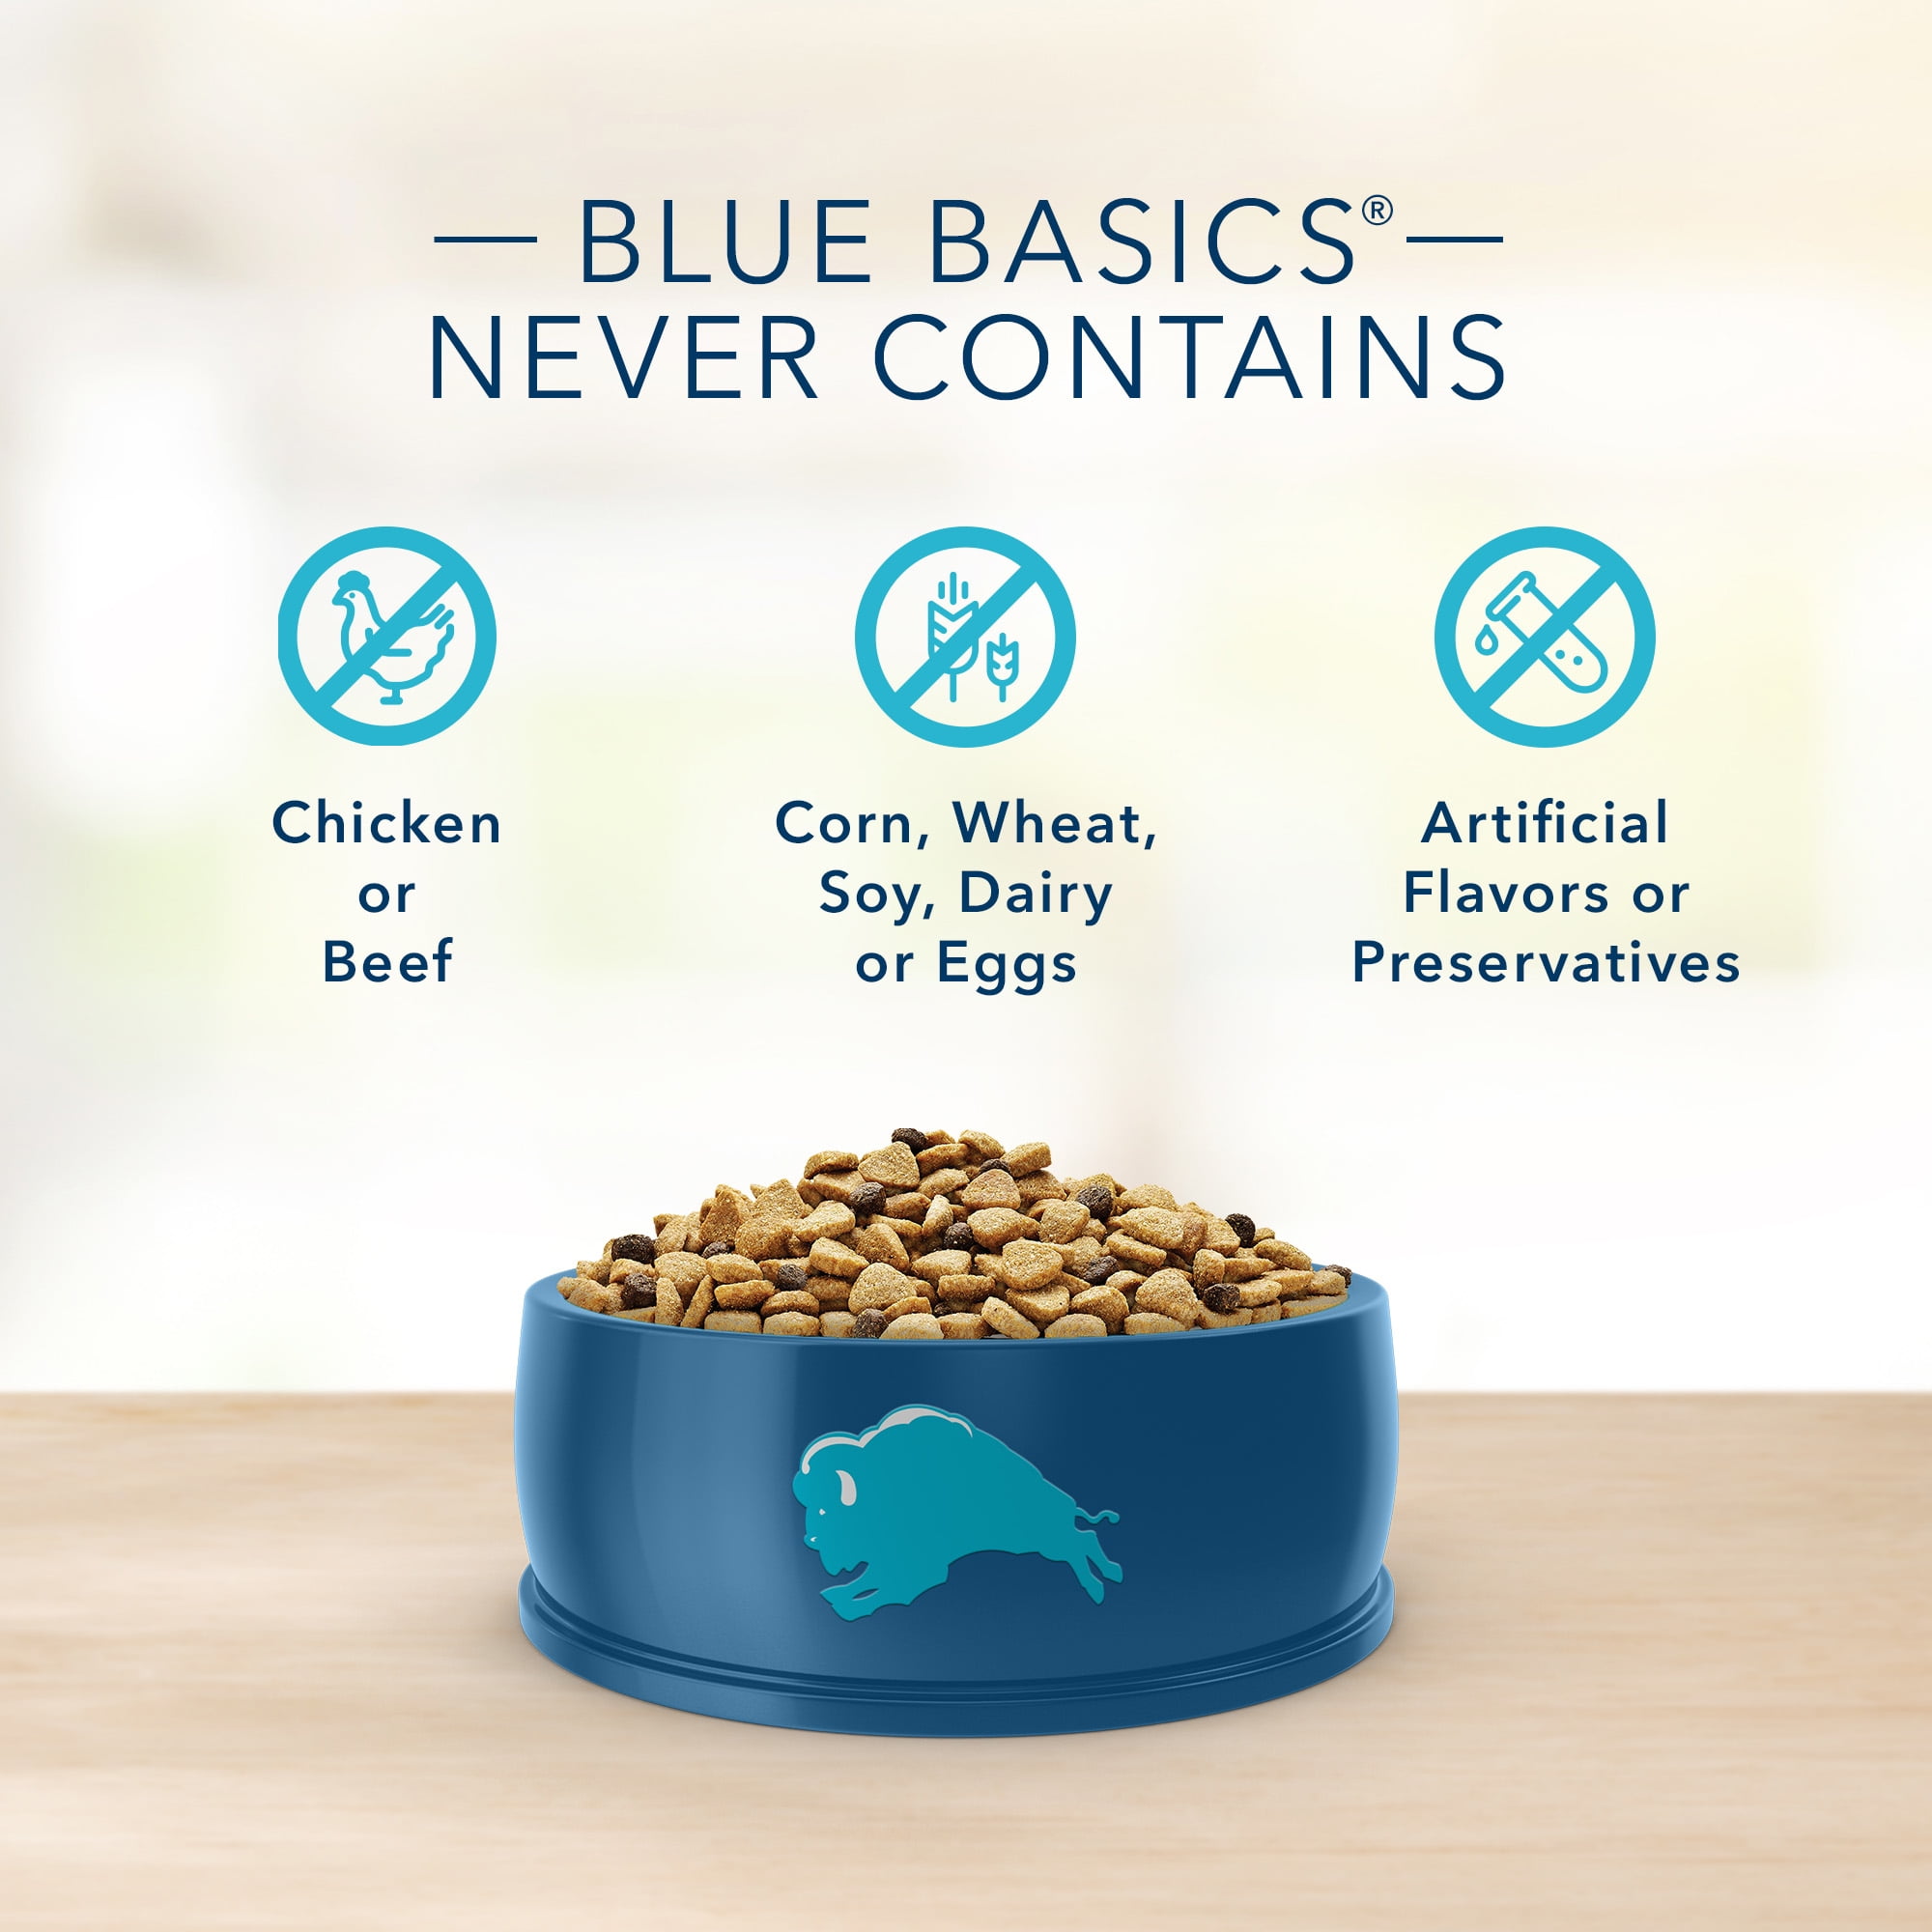 blue basics limited dog food